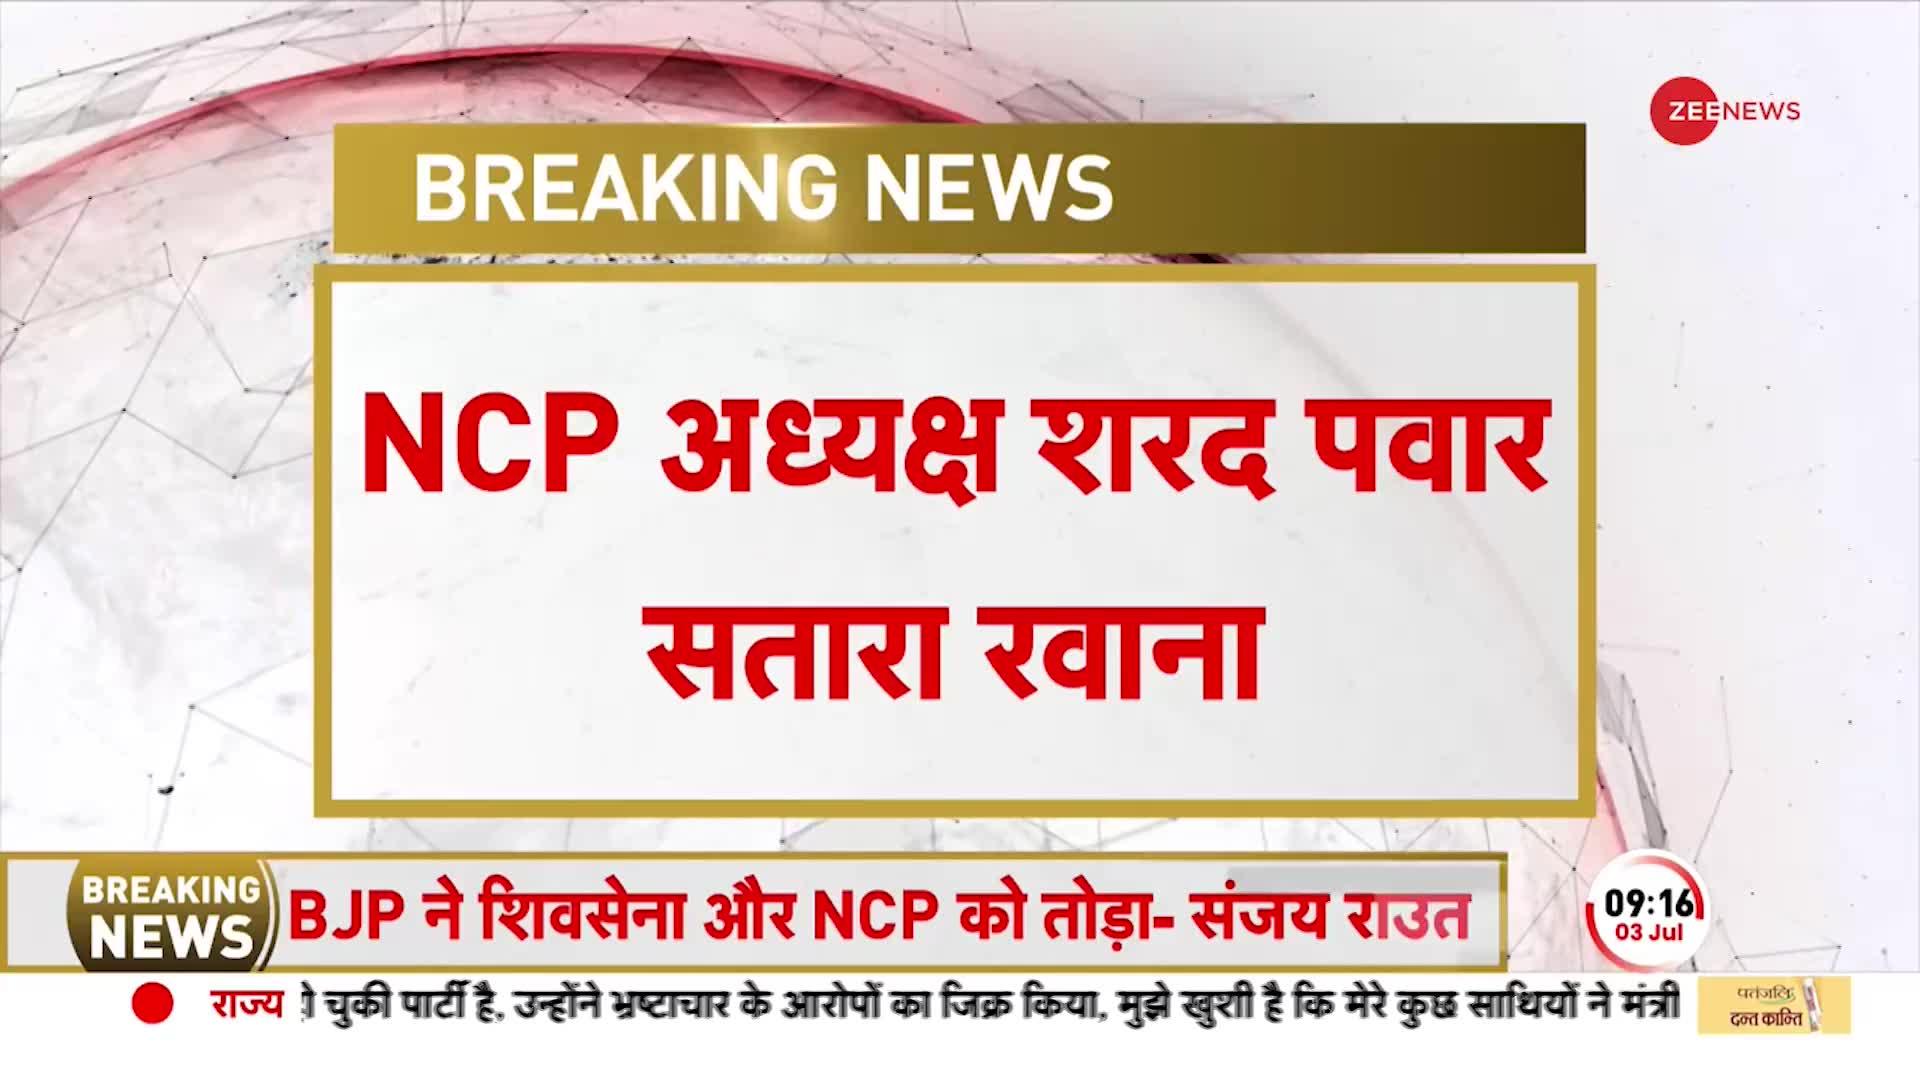 NCP अध्यक्ष शरद पवार सतारा रवाना, पूर्व CM यशवन्तराव चव्हाण को देंगे श्रद्धांजलि